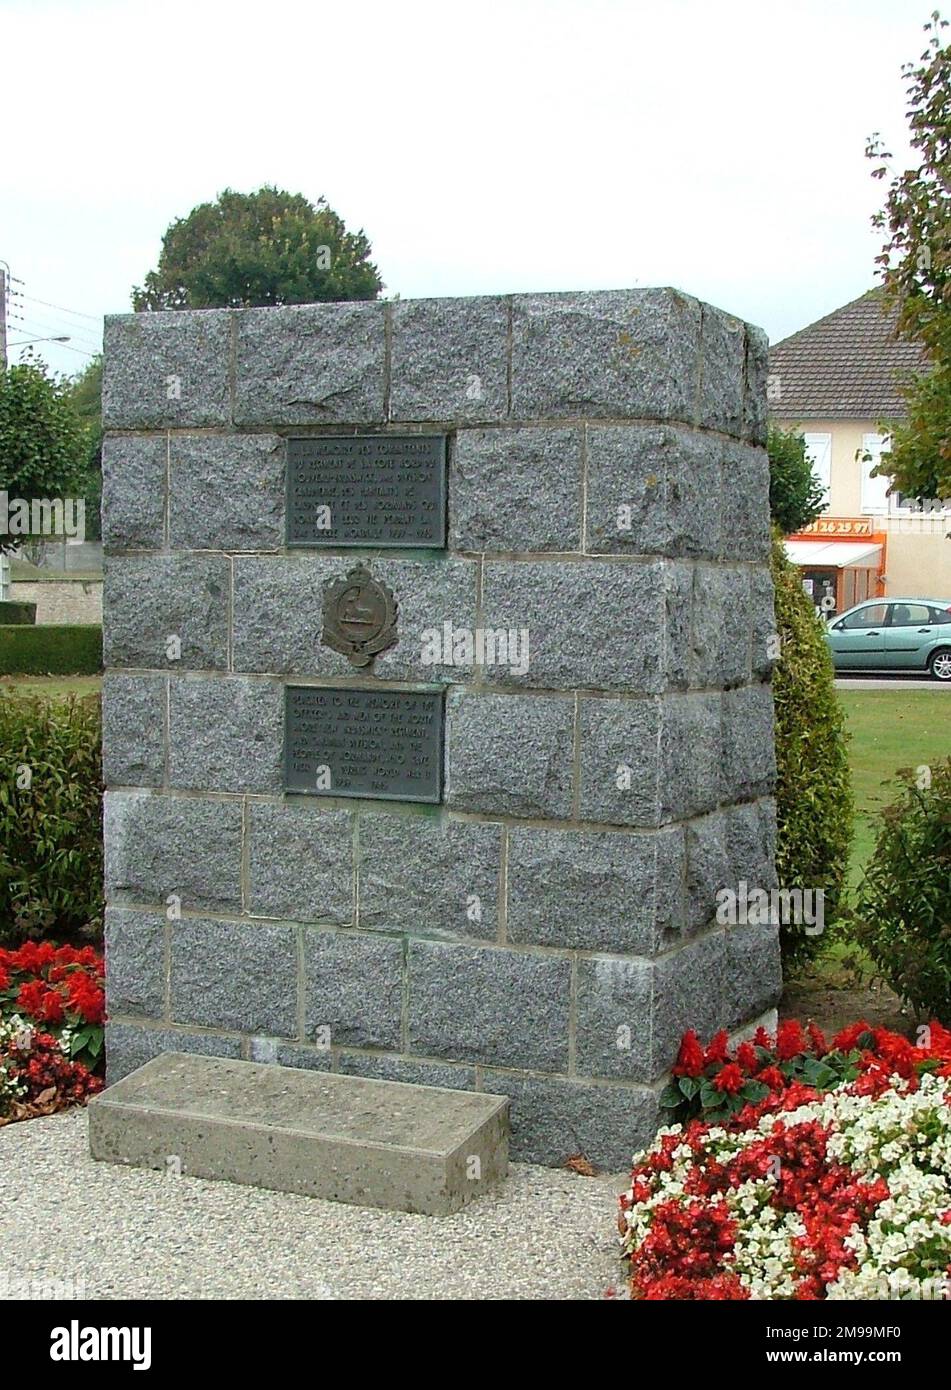 Questo Memorial to the North Shore (New Brunswick) Regiment è sulla D14 verso l'aeroporto di Carpiquet. Accanto ad esso, su un NTL (Normandie Terre-Liberte) Totem, è un racconto della lotta dei canadesi con 12th SS (Hitler Youth). I combattimenti sono durati fino al 8 luglio. Foto Stock